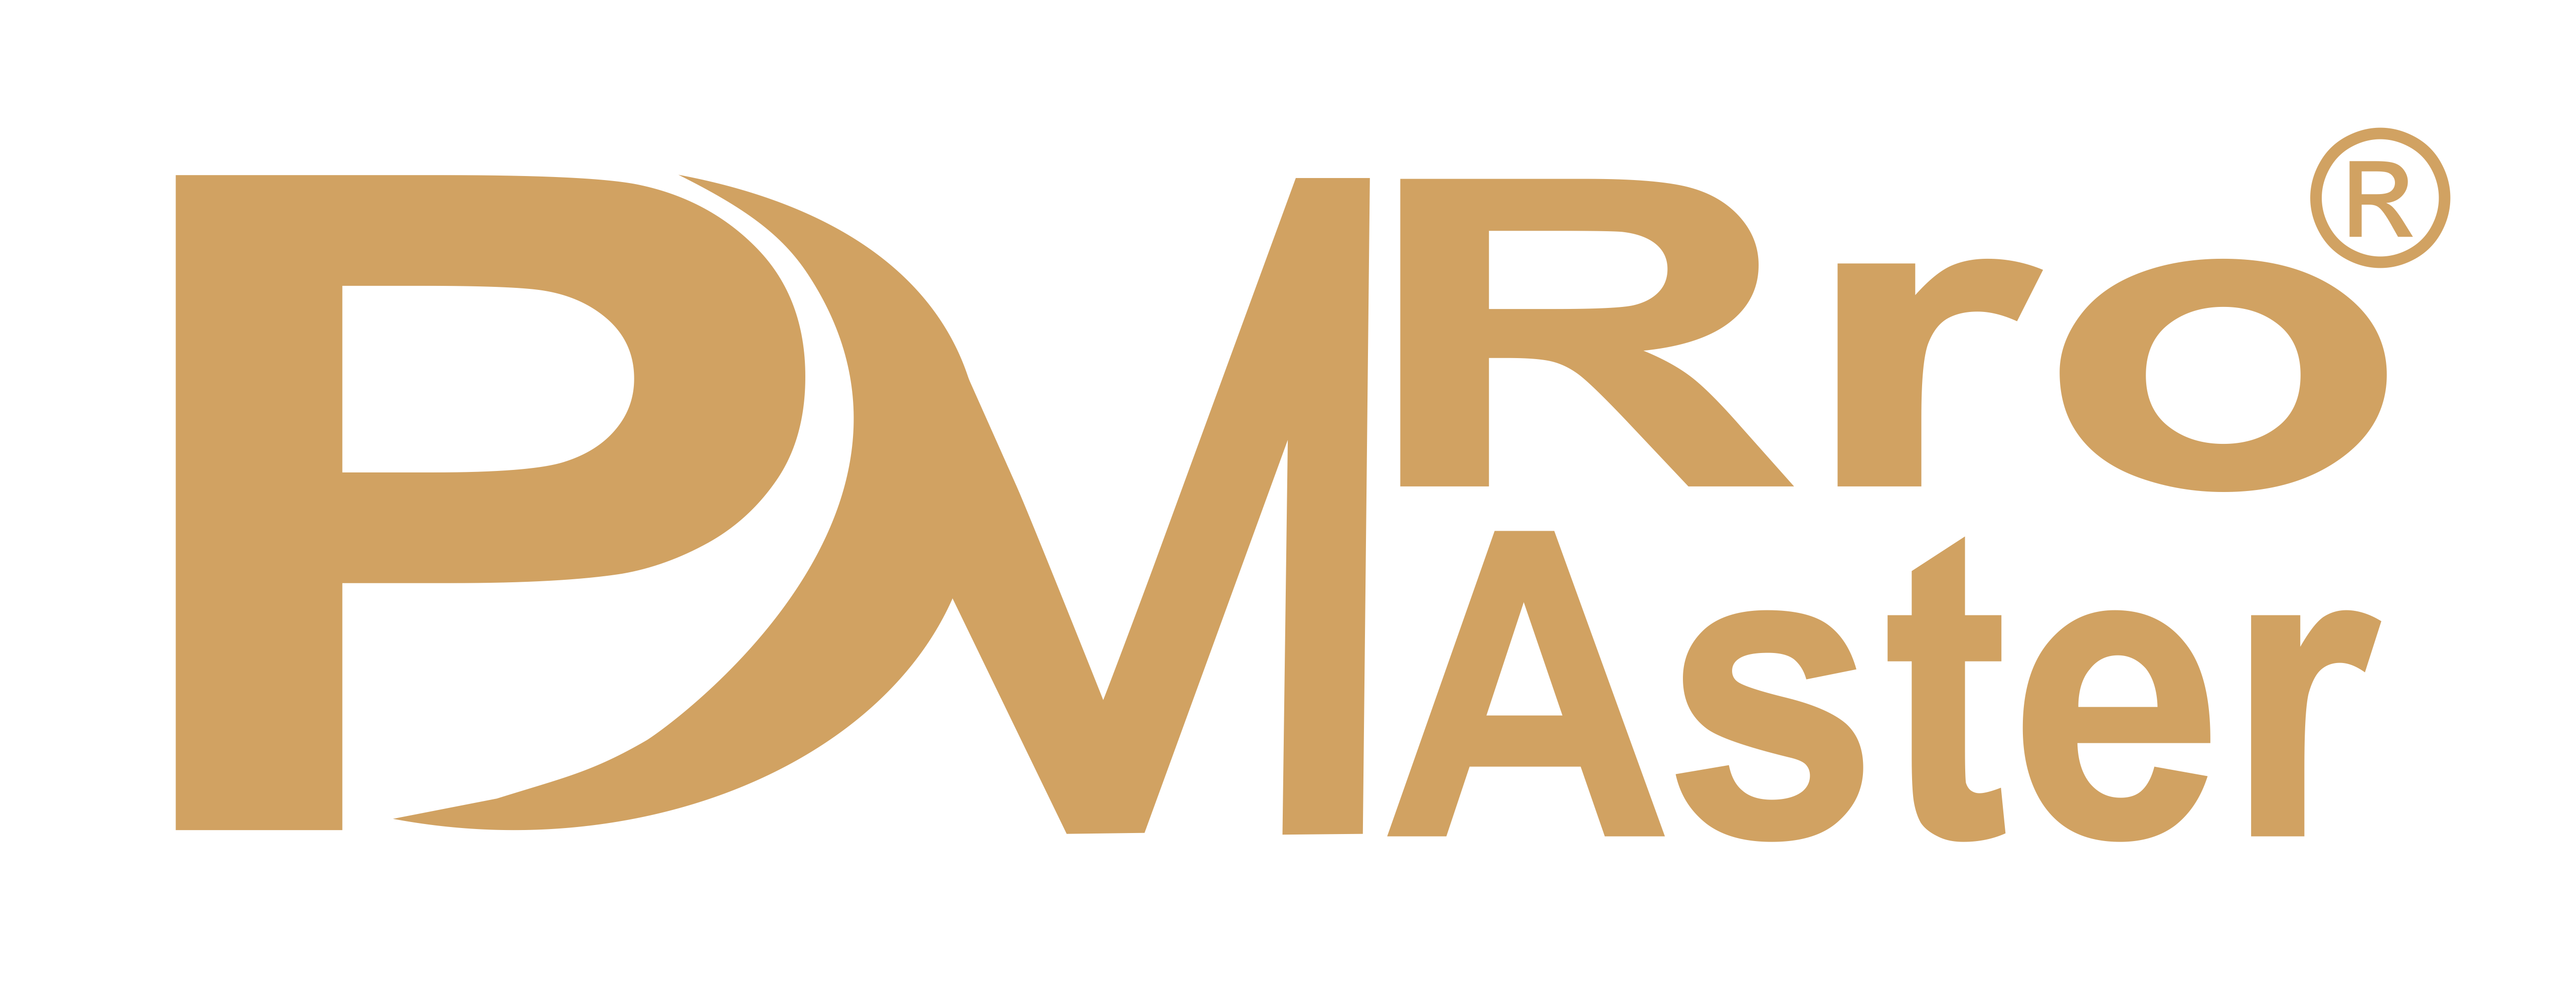 LogoProMaster